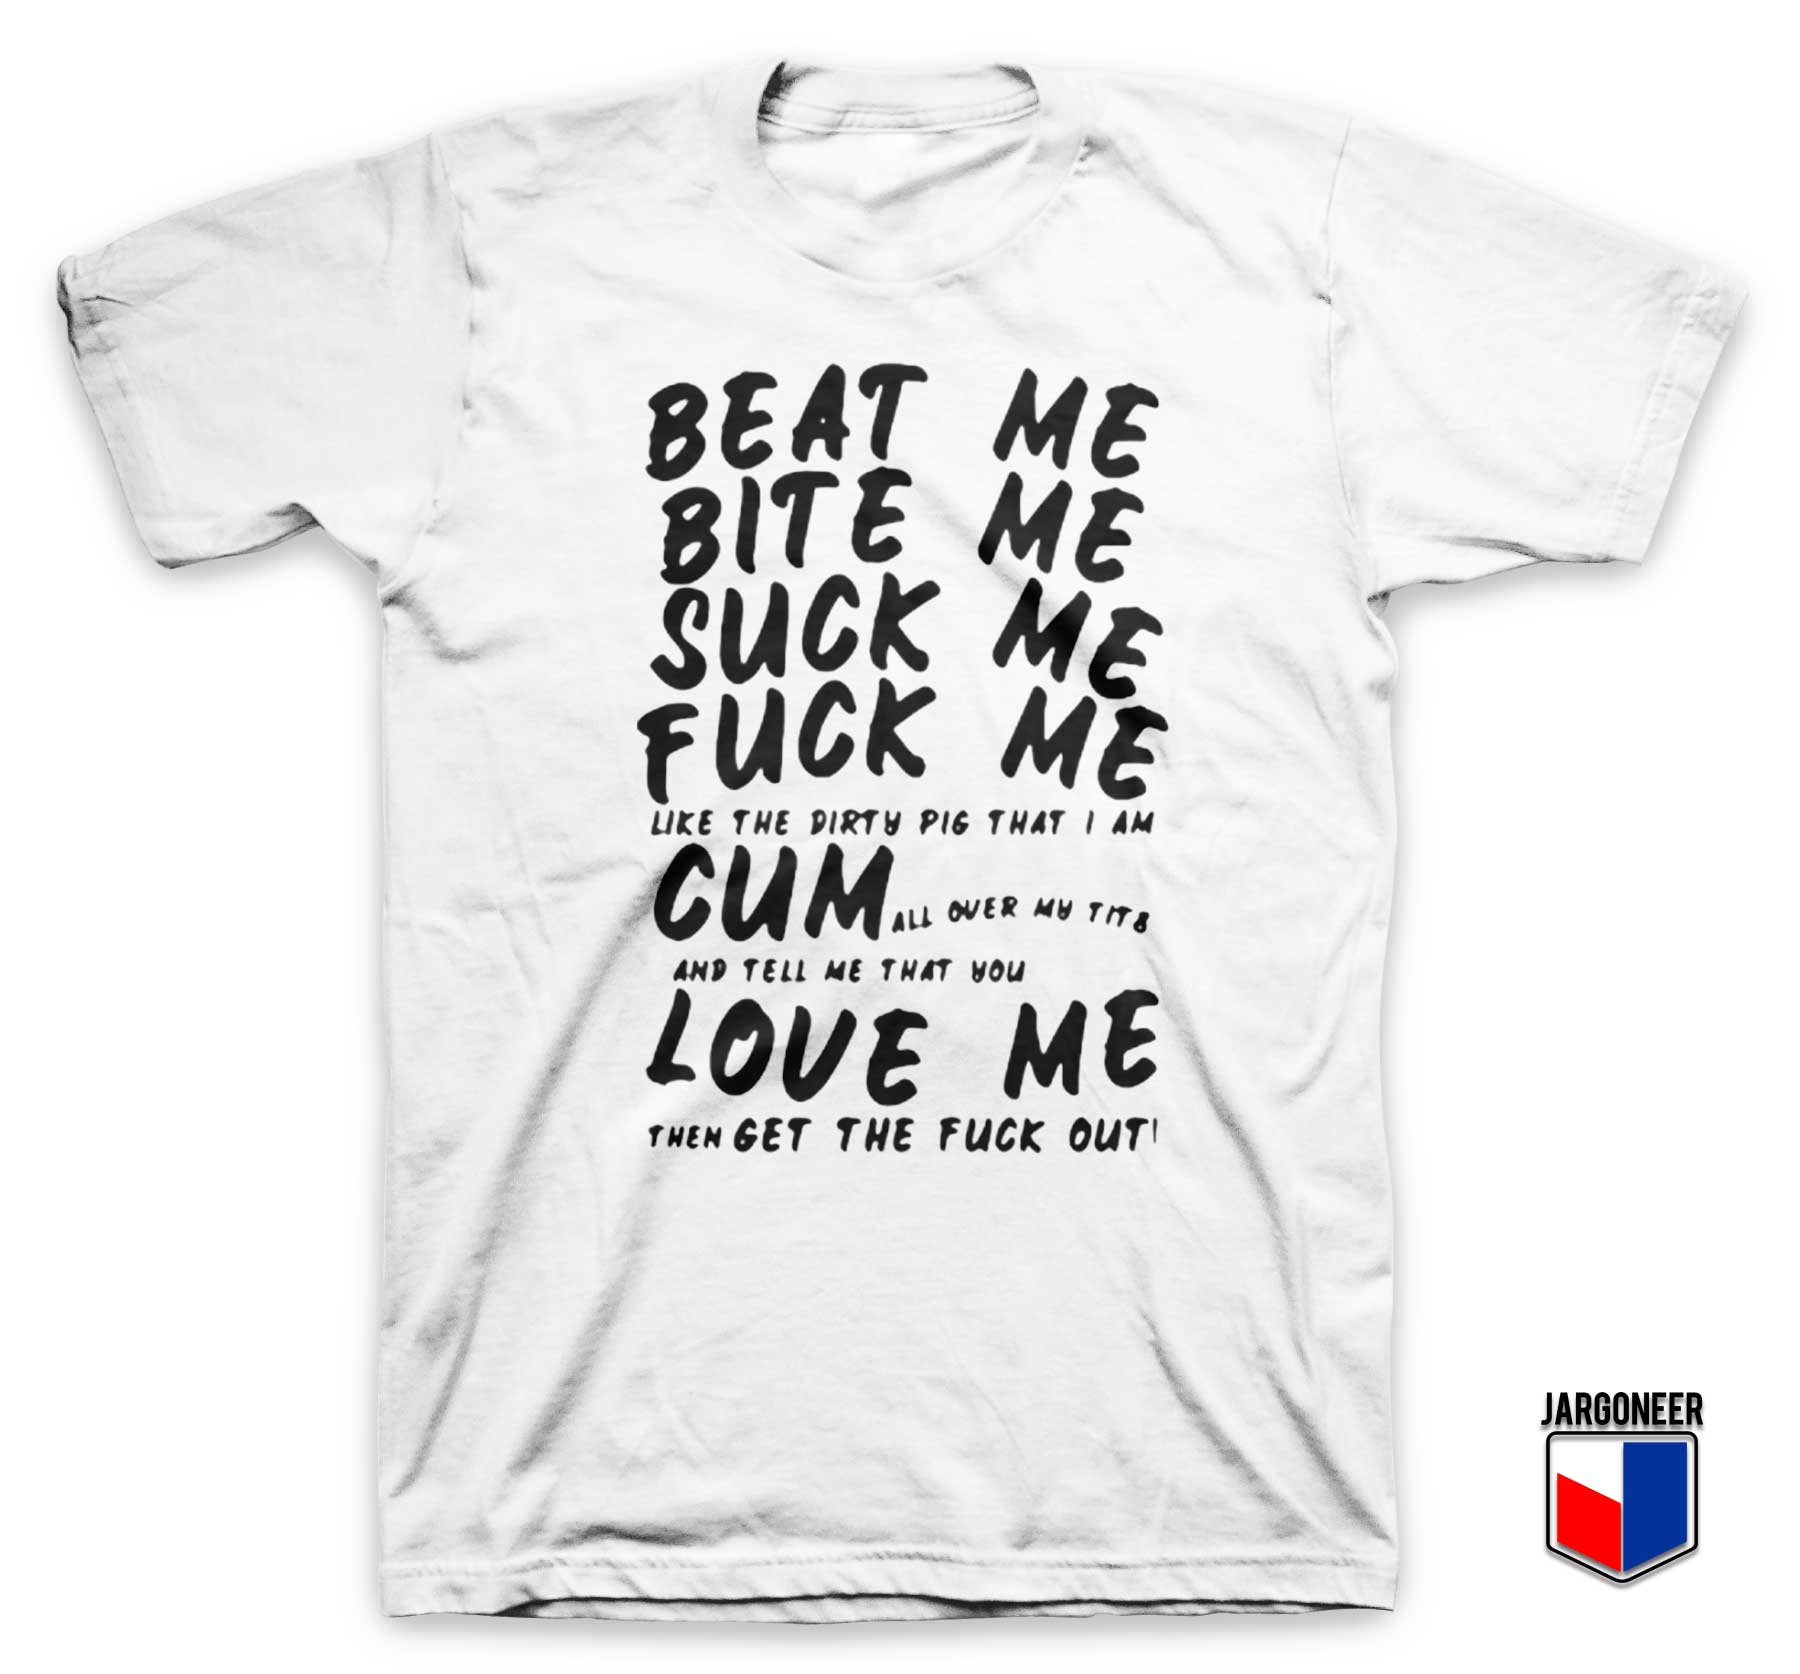 Beat Me Bite Me Suck Me Fuck Me T Shirt - Shop Unique Graphic Cool Shirt Designs